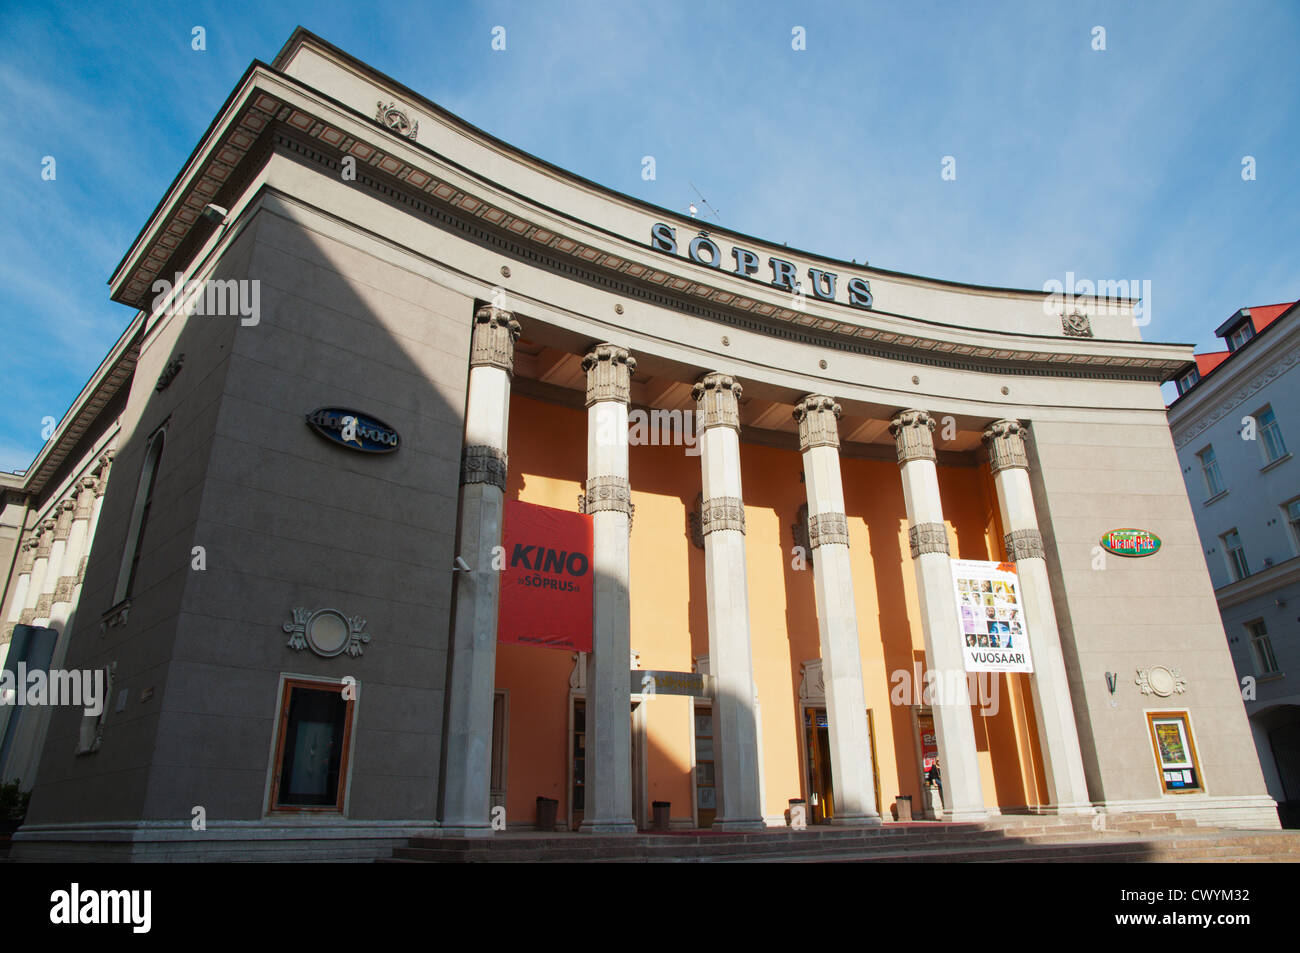 Stalinistischen Ära Gebäude jetzt Soprus Kino alte TownTallinn Estland Europa Gehäuse Stockfoto